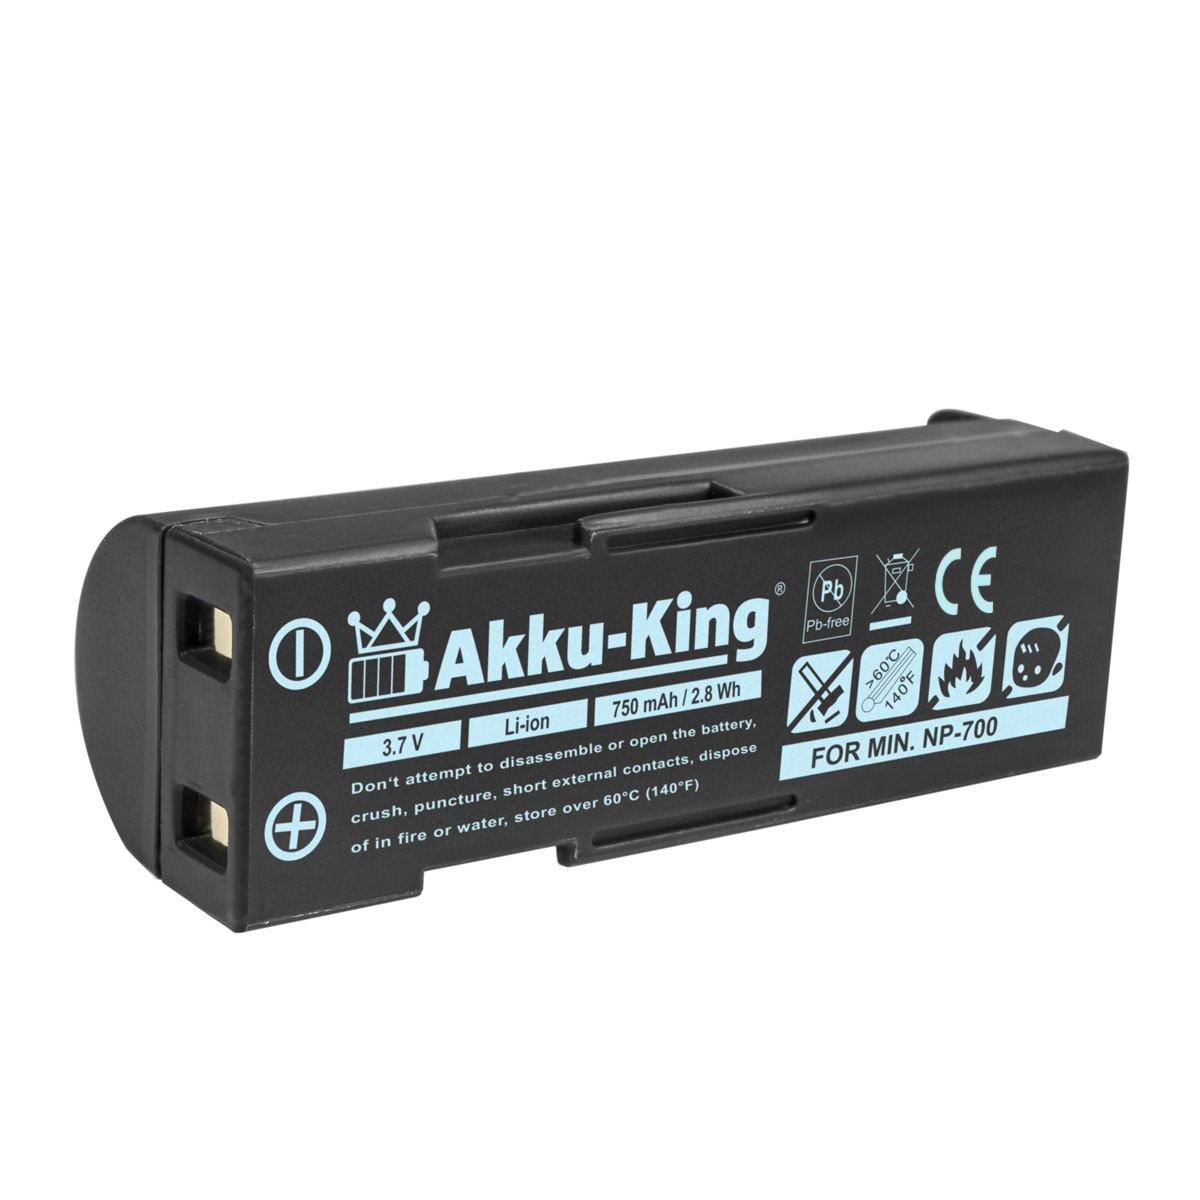 AKKU-KING Akku kompatibel DB-L30A mit 3.7 Sanyo 750mAh Volt, Li-Ion Kamera-Akku